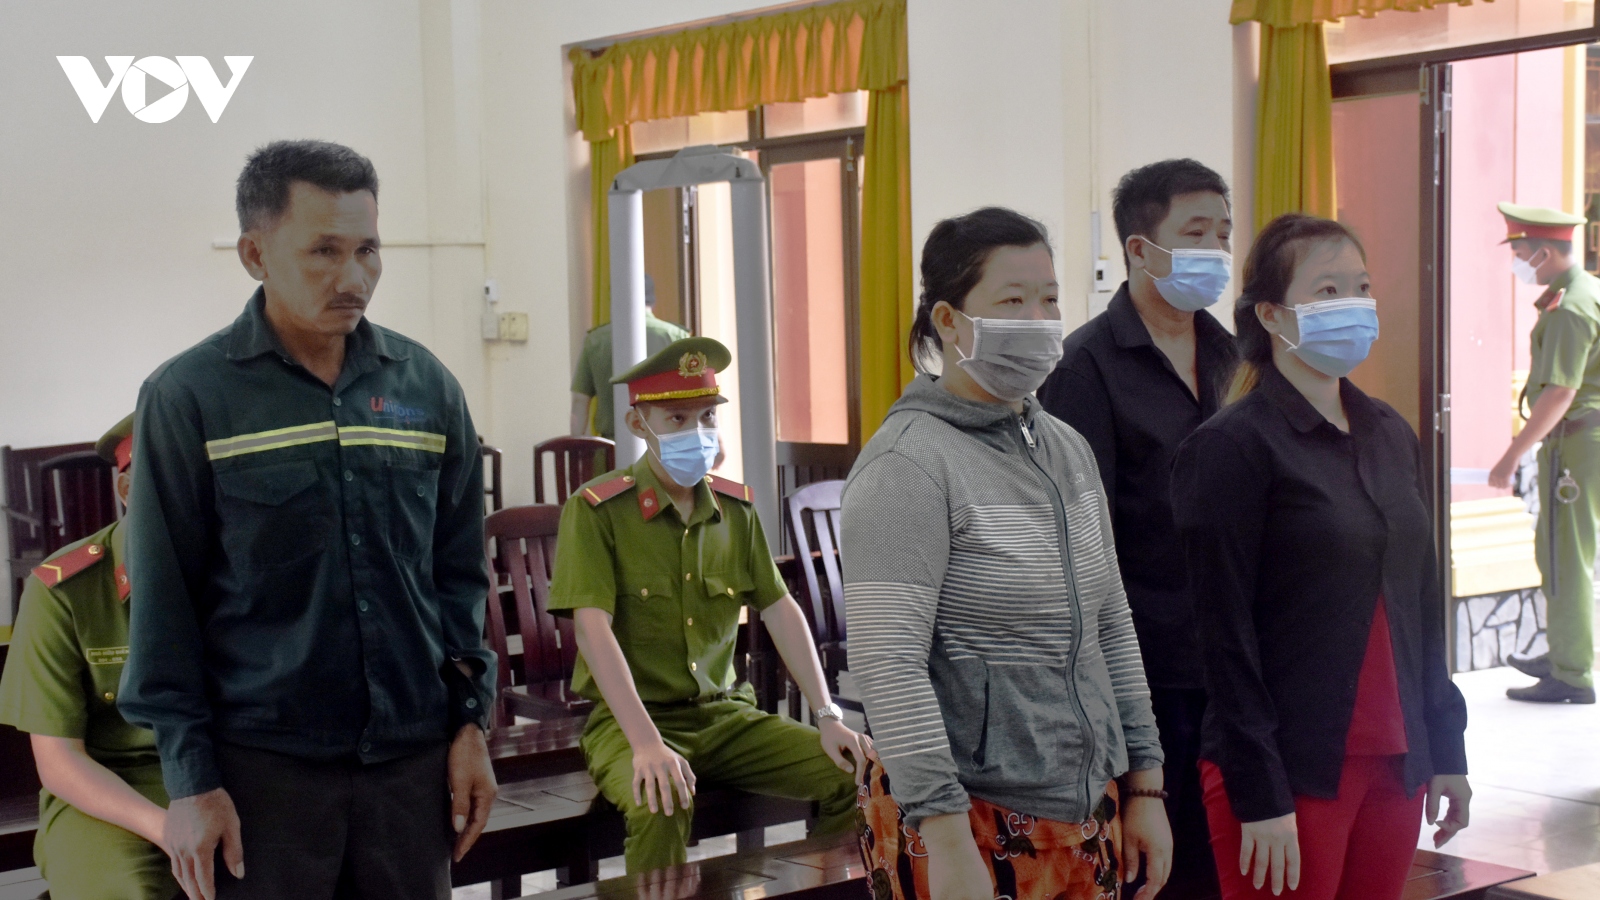 Đưa người vượt biên sang Campuchia lấy vài trăm nghìn: 8 năm tù cho 4 bị cáo